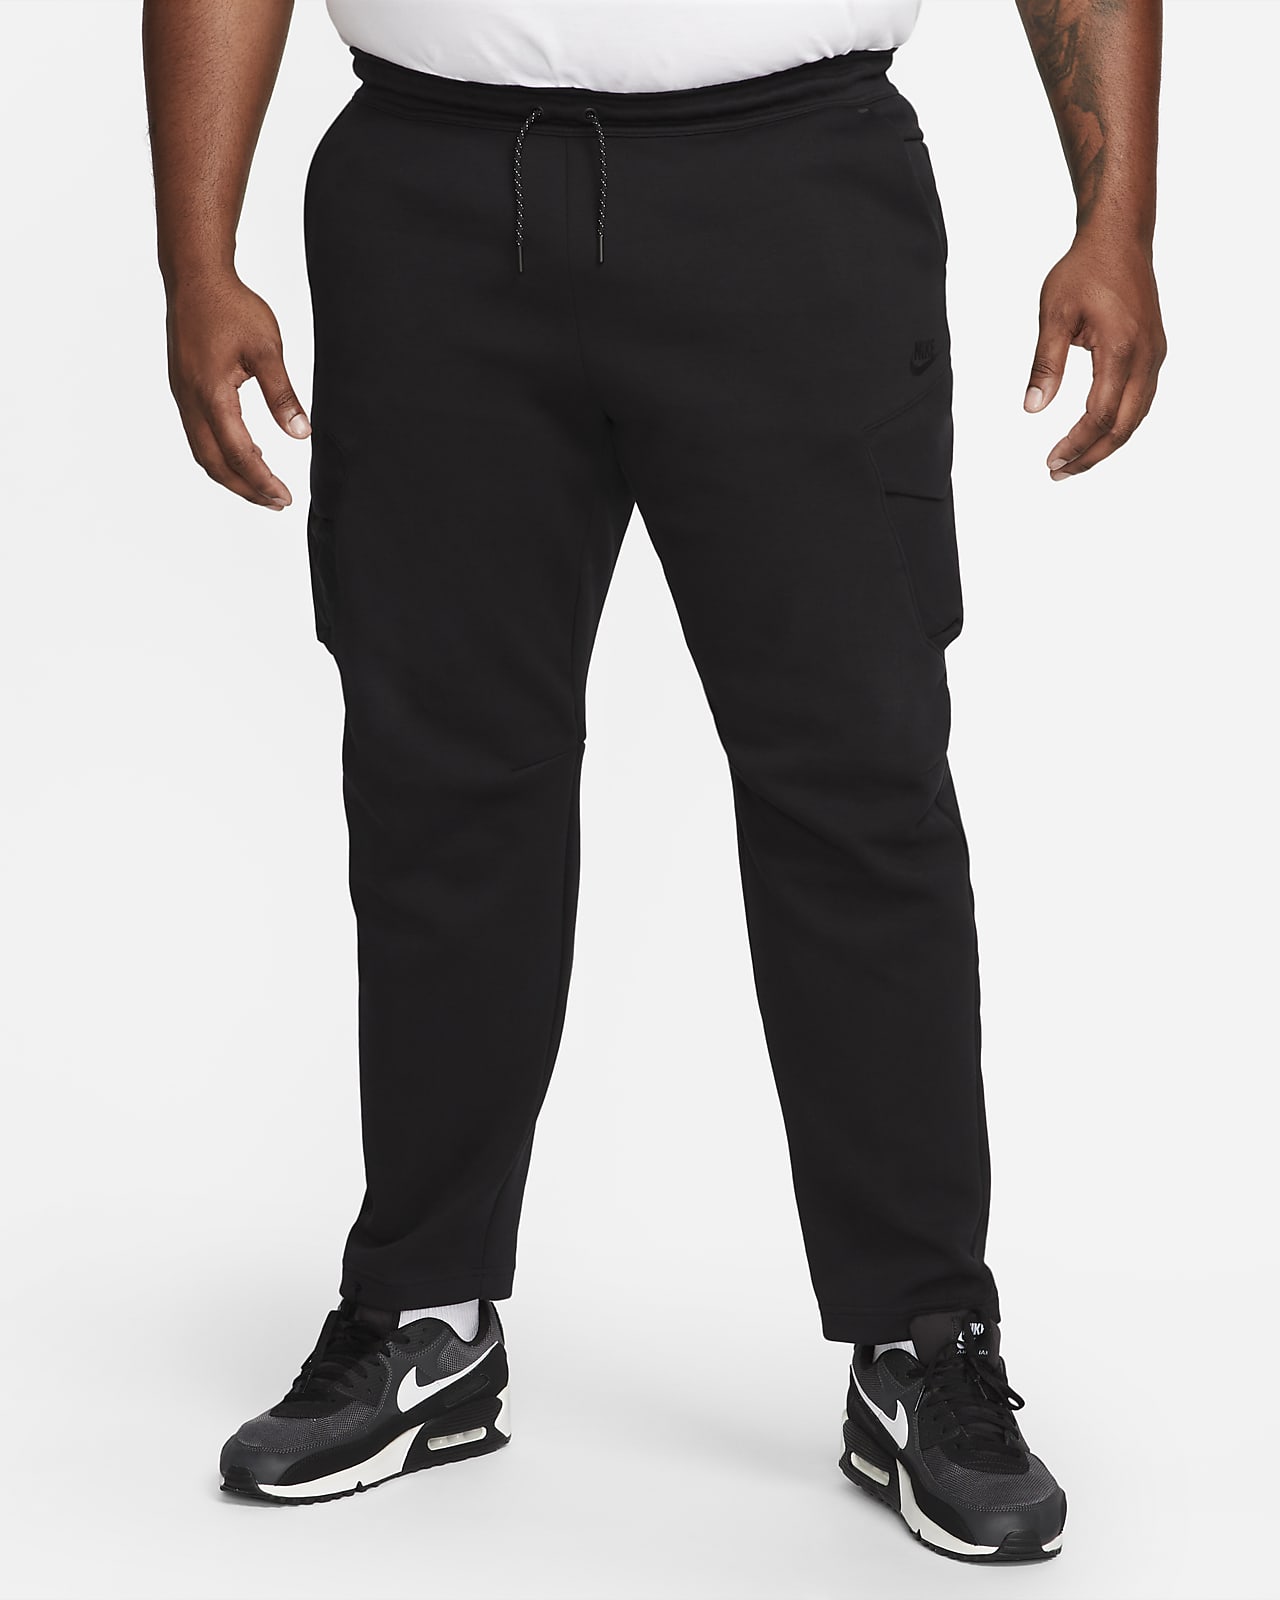 Nike Men's Sportswear Tech Fleece Pants Black 861679-010